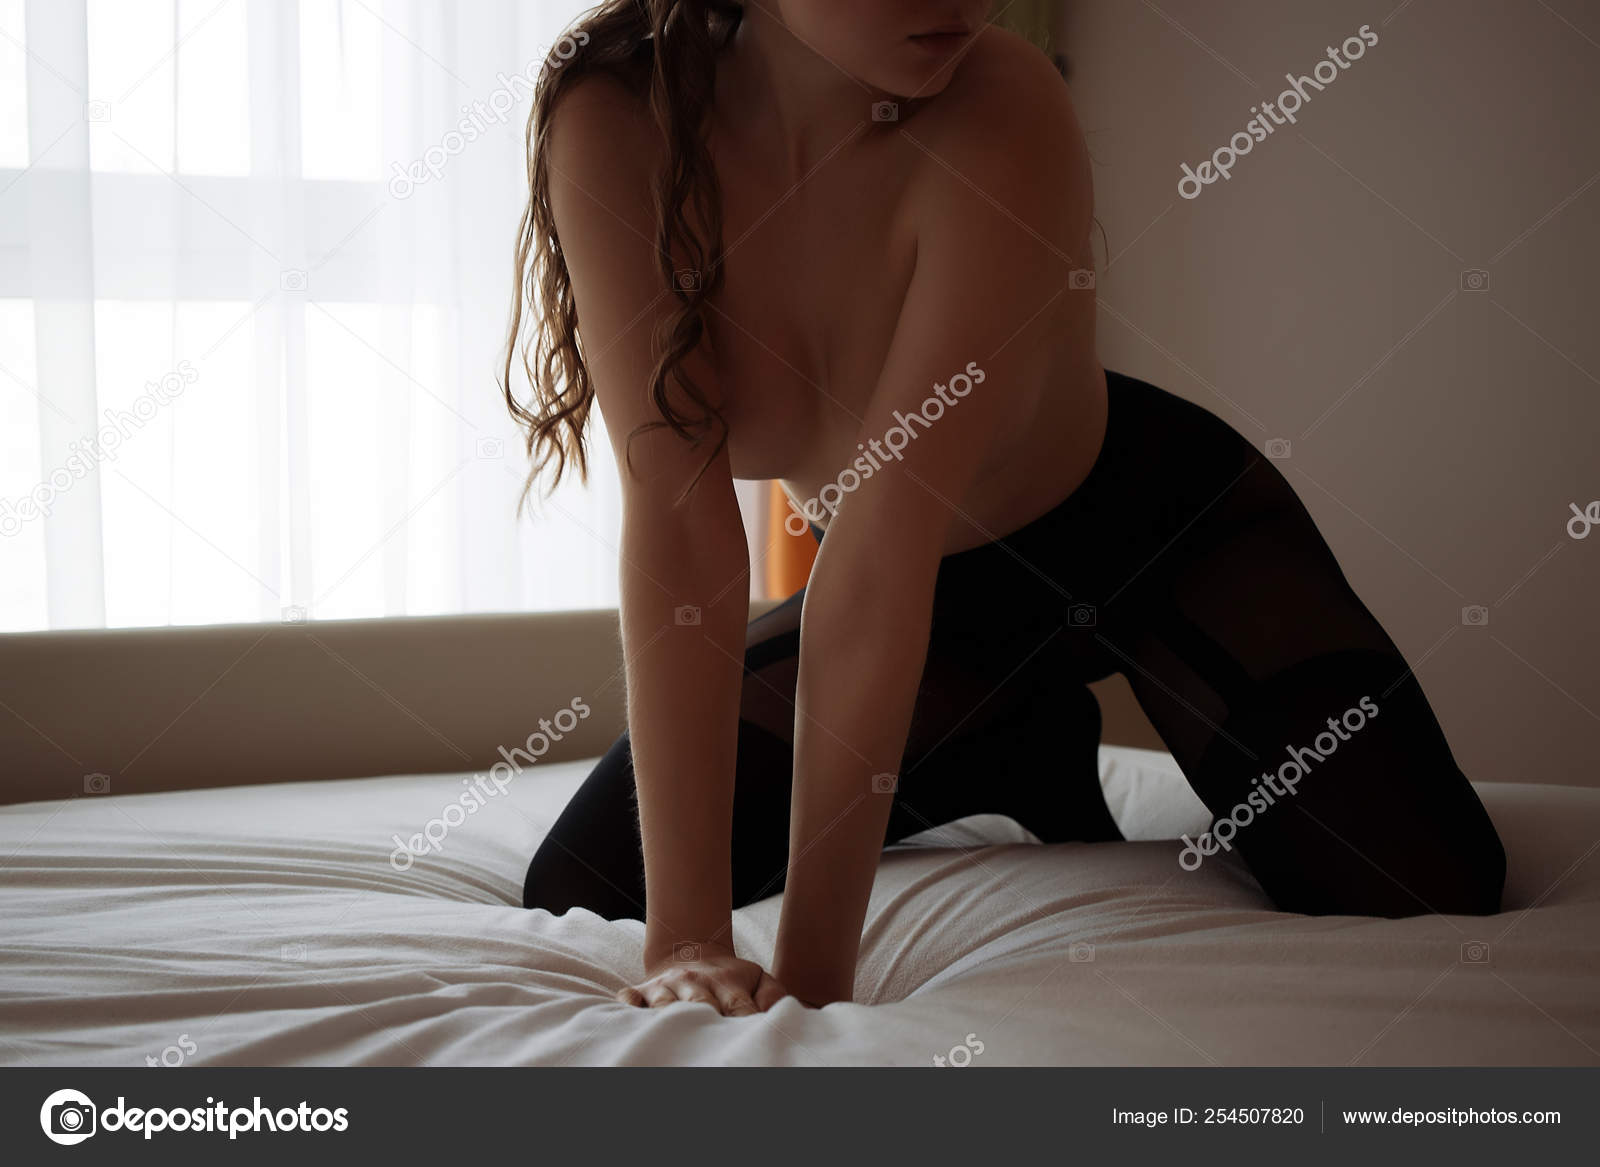 https://st4n.depositphotos.com/5034975/25450/i/1600/depositphotos_254507820-stock-photo-young-sensual-naked-woman-posing.jpg